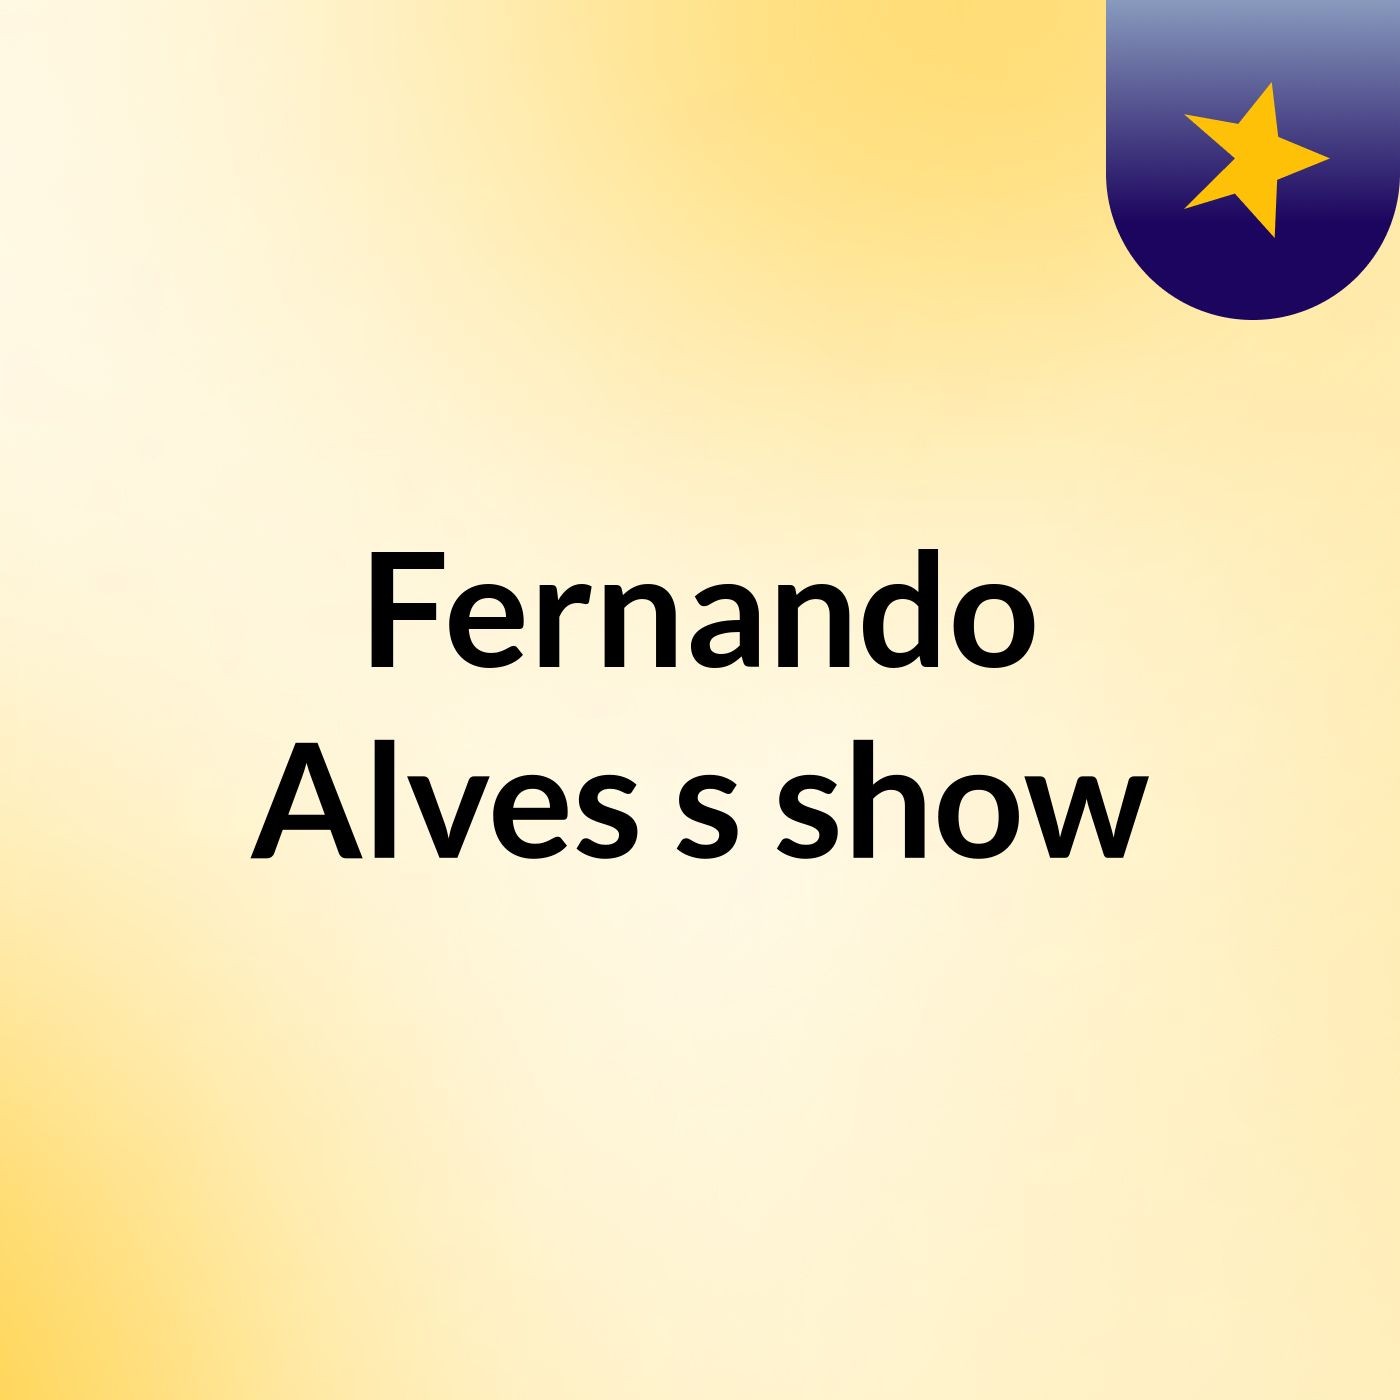 Fernando Alves's show